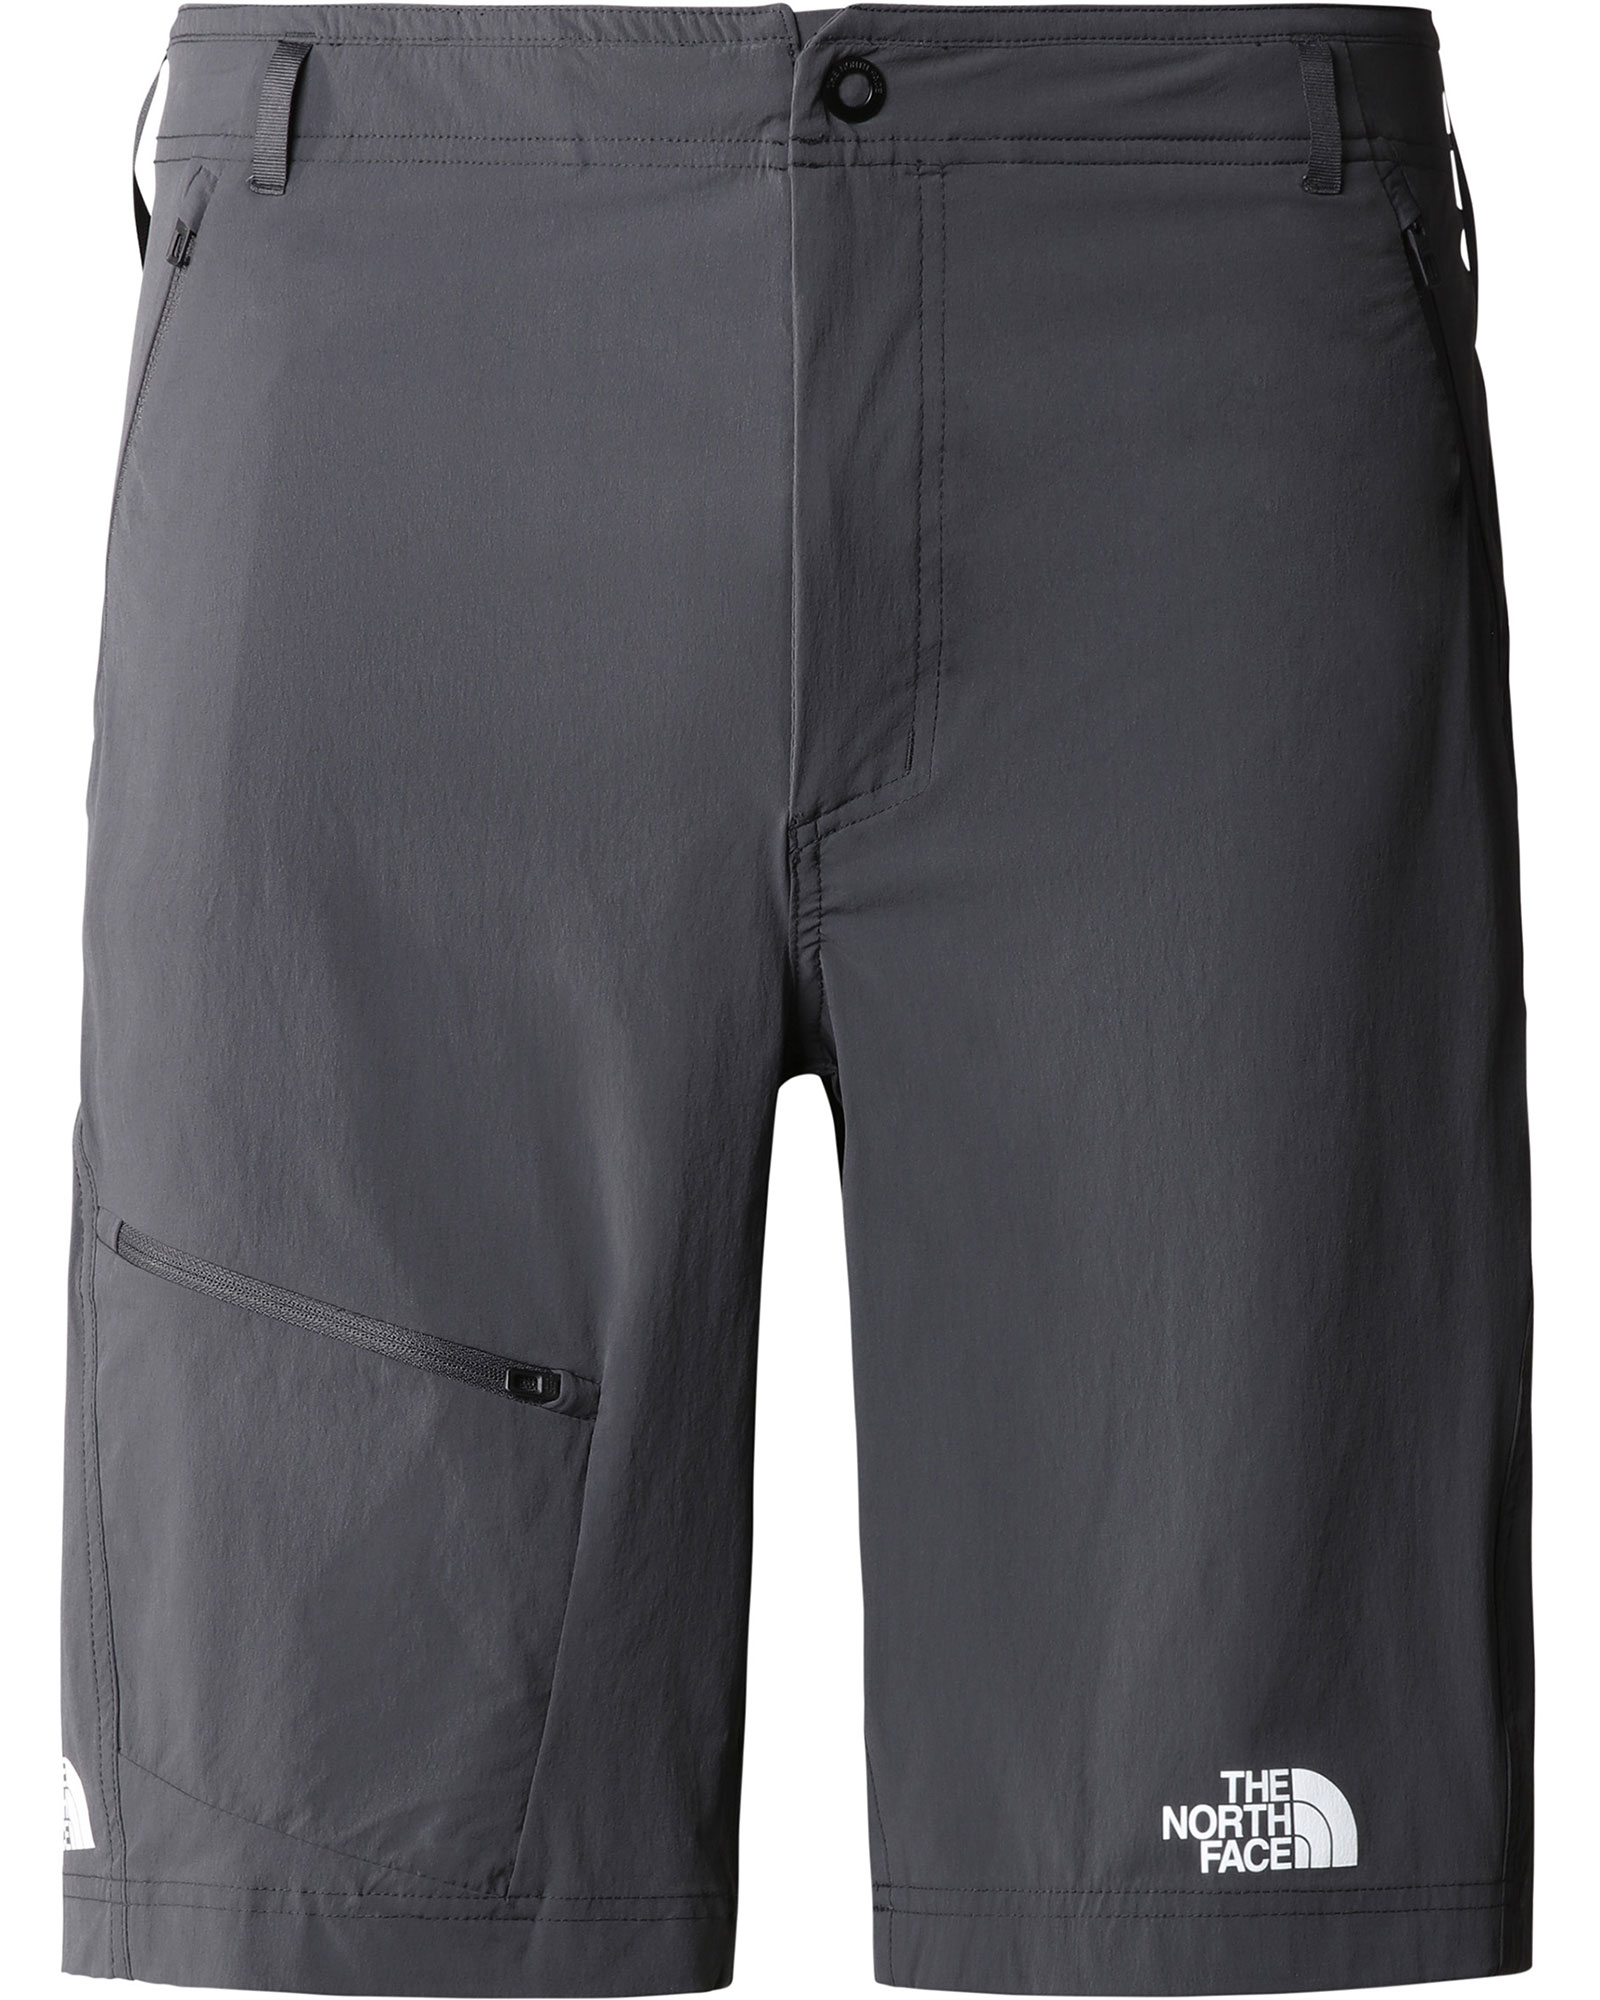 The North Face Men’s Speedlight Slim Tapered Shorts - Asphalt Grey EU 38